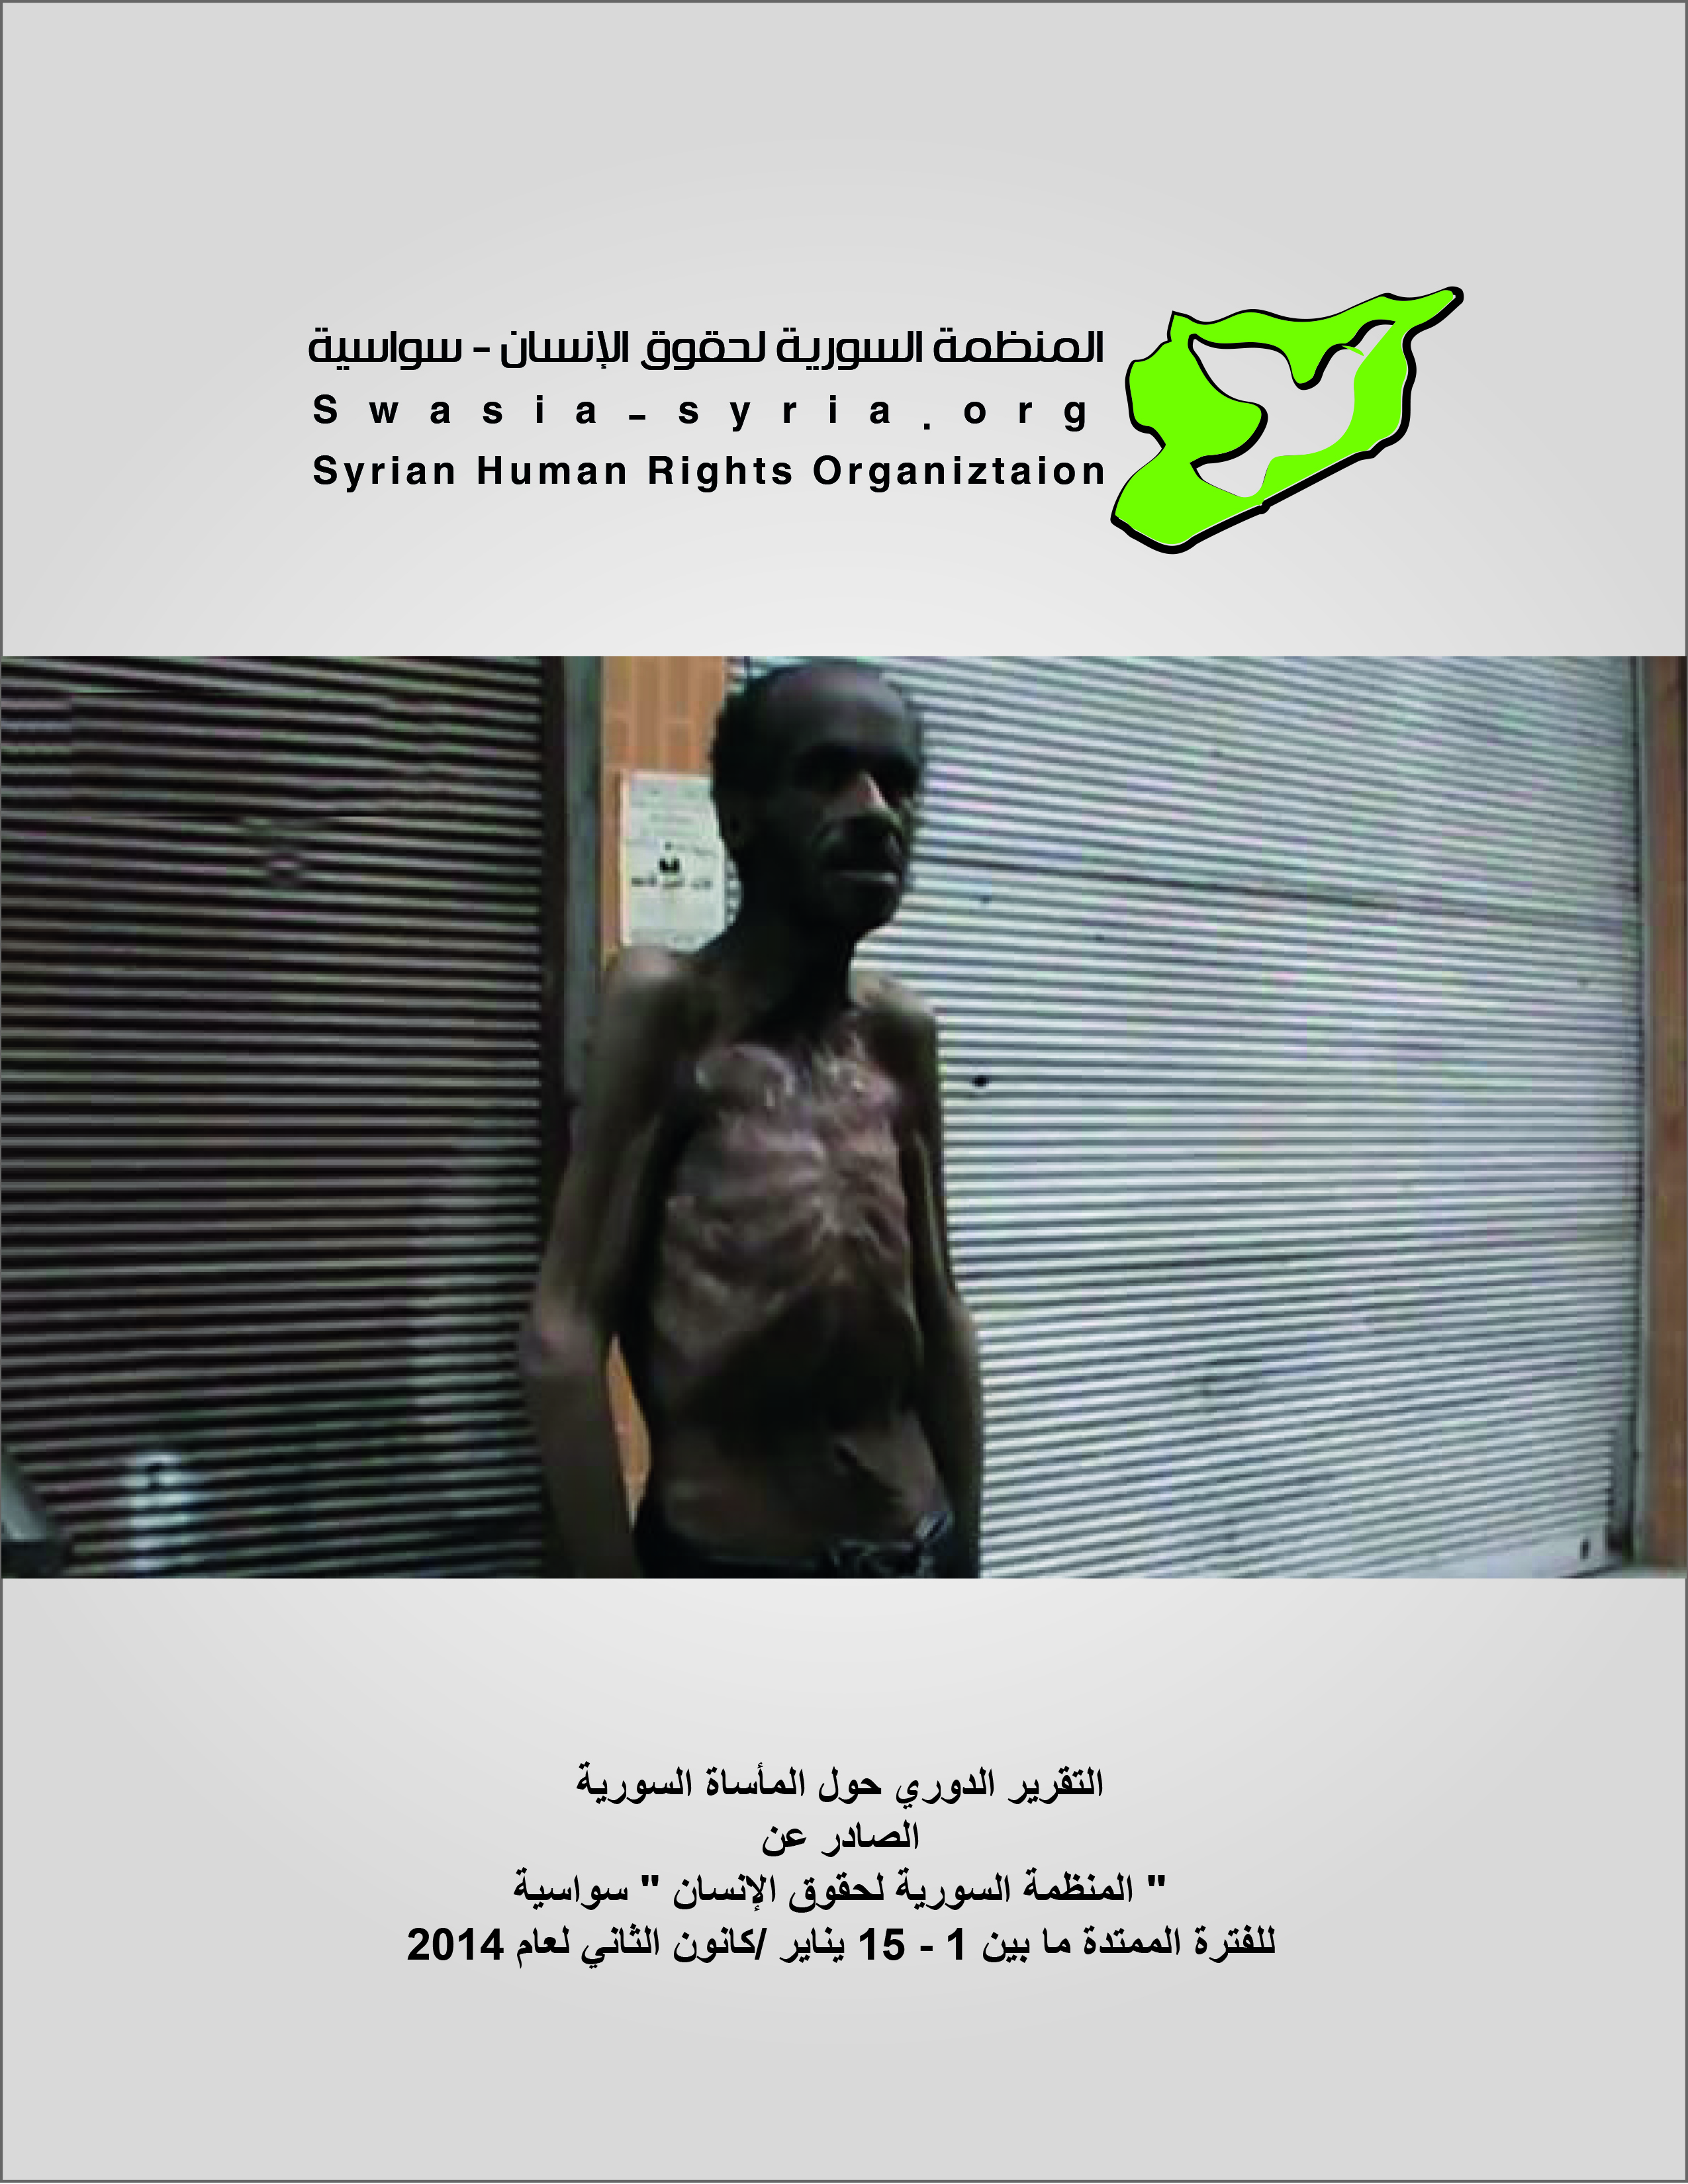 سوريا في اعقاب جنيف 2 والتقرير الدوري الصادر عن منظمة حقوق الانسان